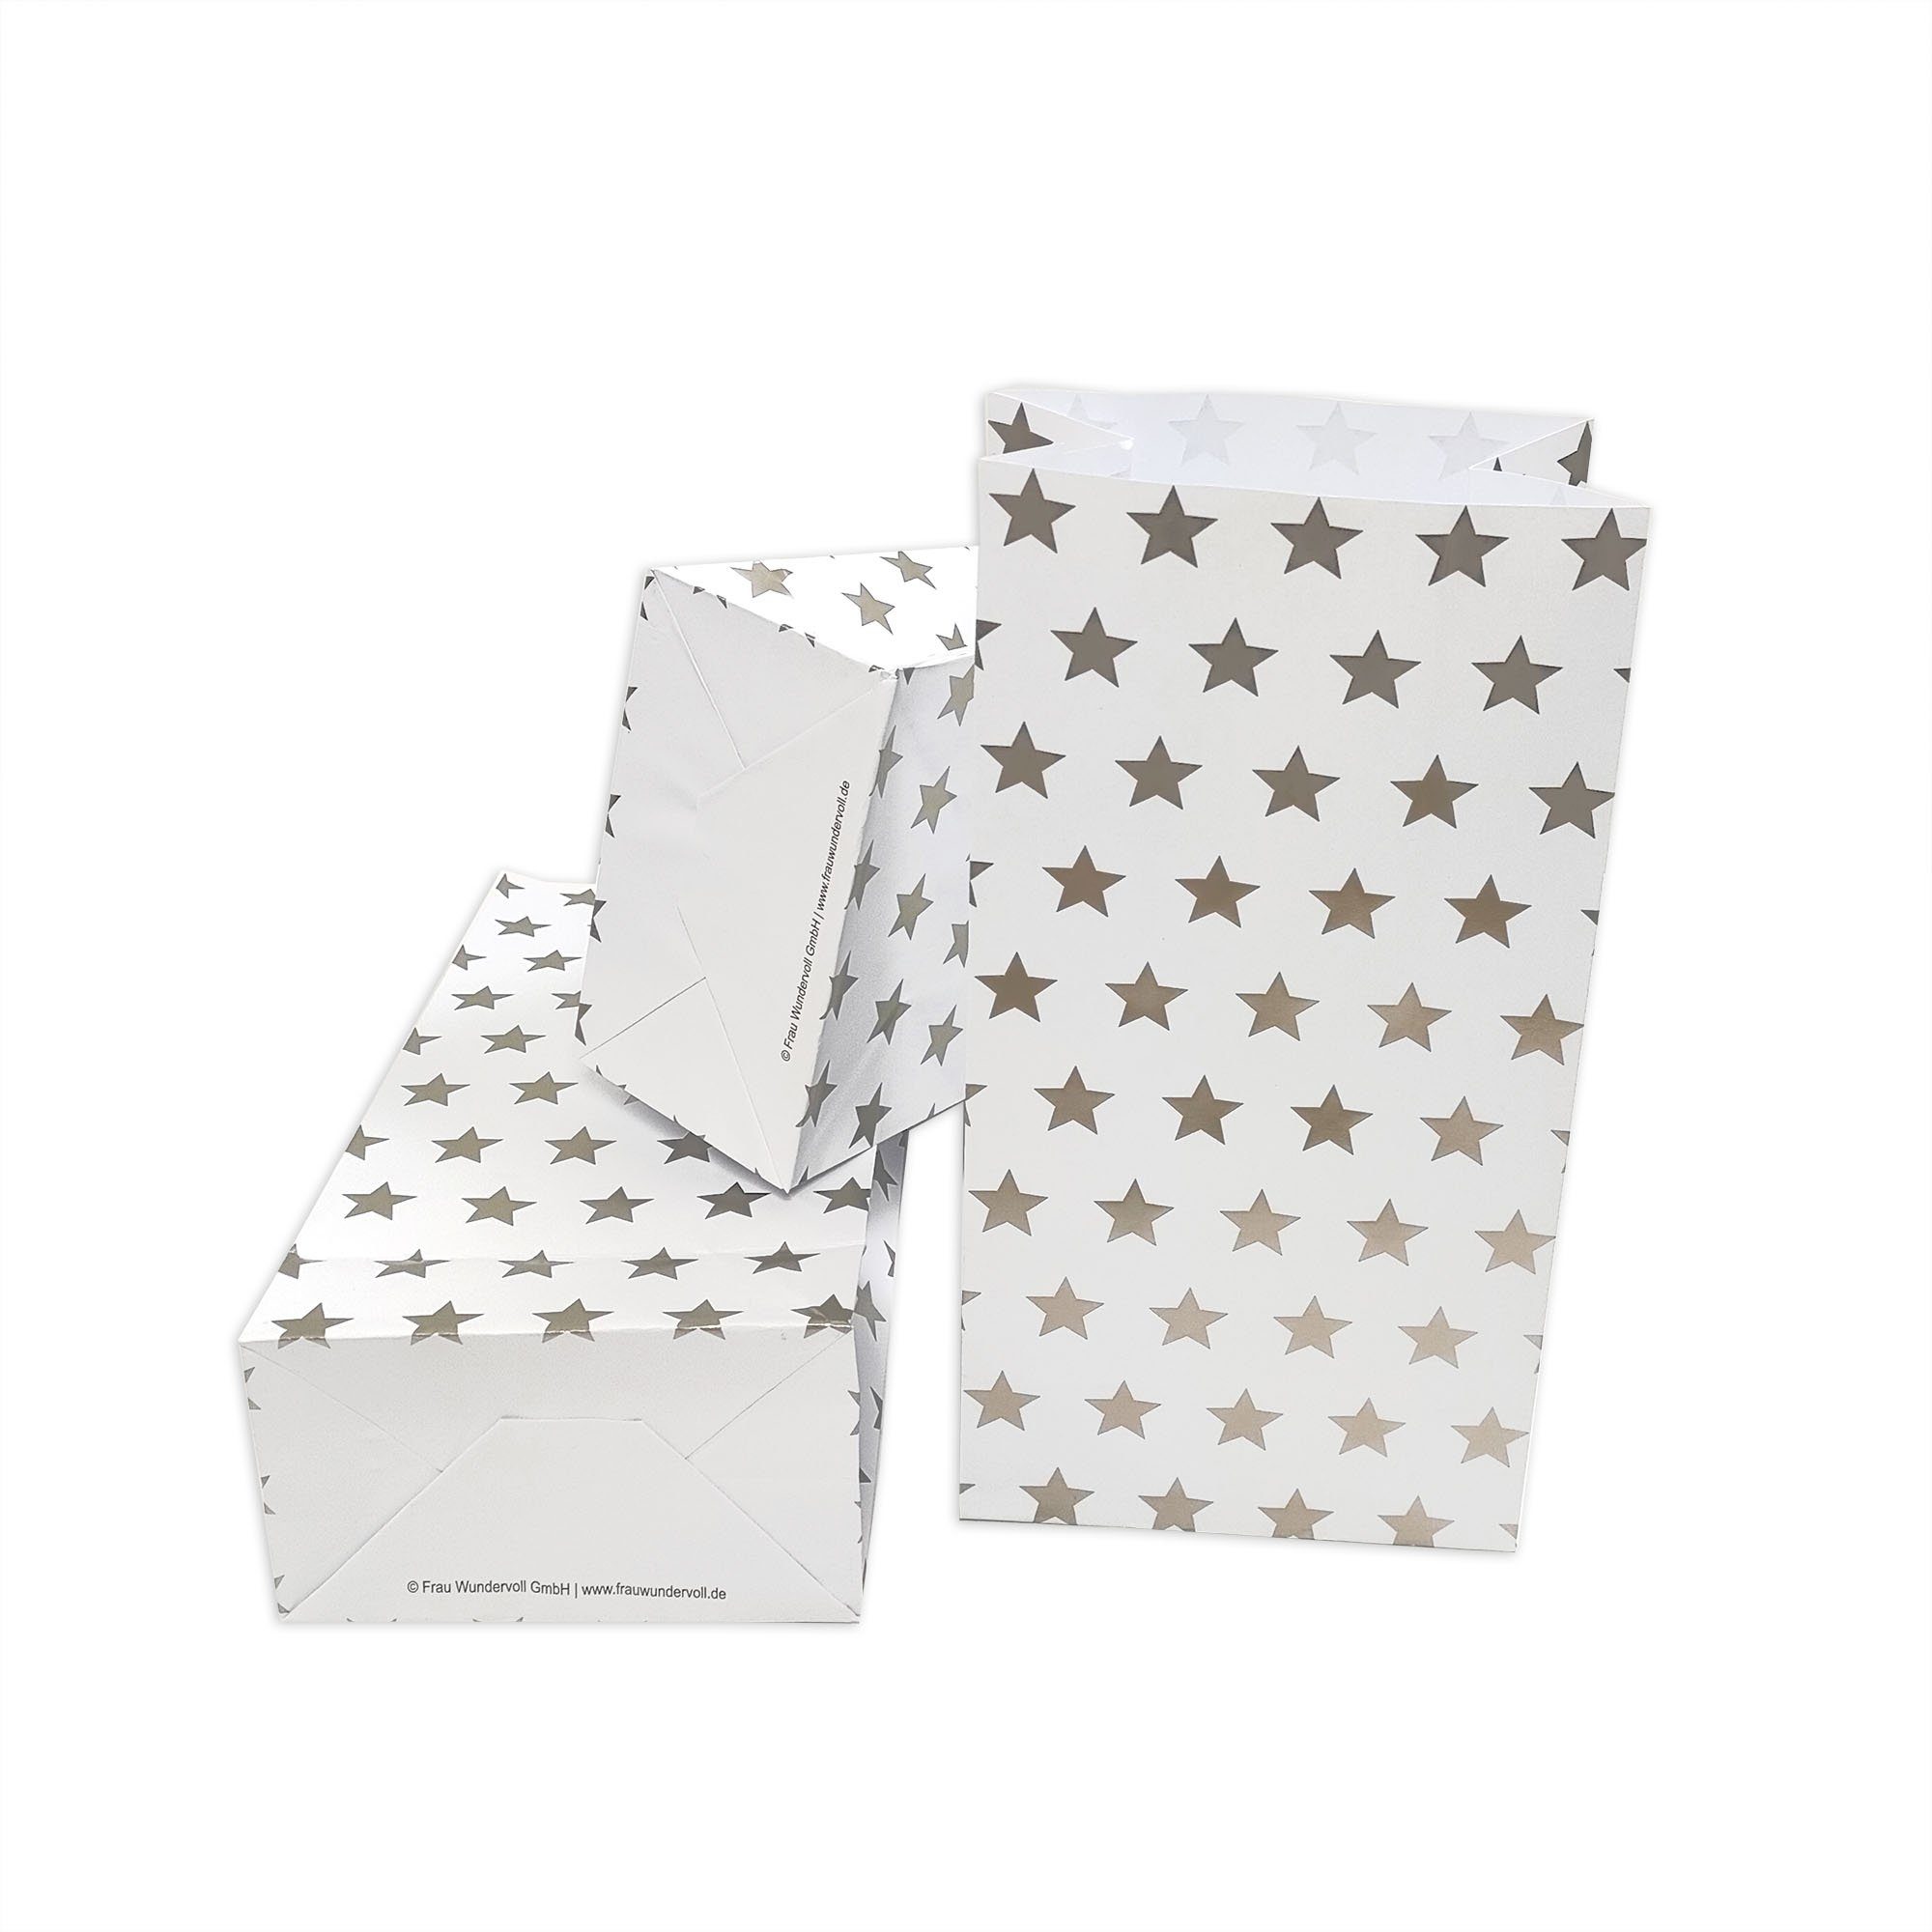 Frau WUNDERVoll Papierdekoration Papiertüten mit Boden - weiß, silber Sterne, 100g Papier